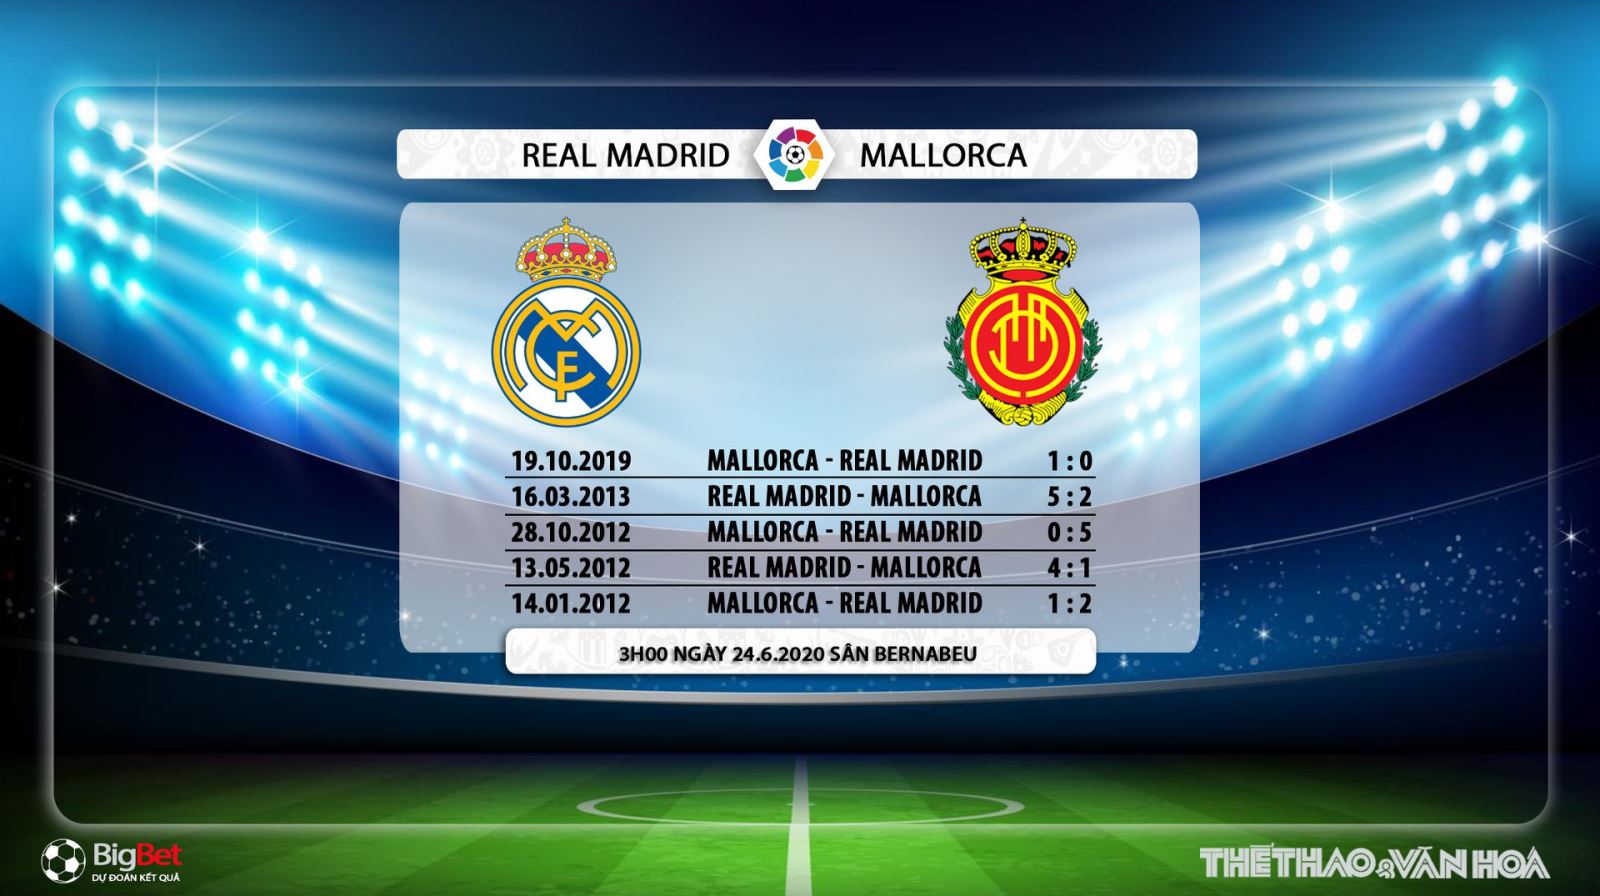 Real Madrid vs Mallorca, Real Madrid, Mallorca, trực tiếp bóng đá, bóng đá, bong da, La Liga